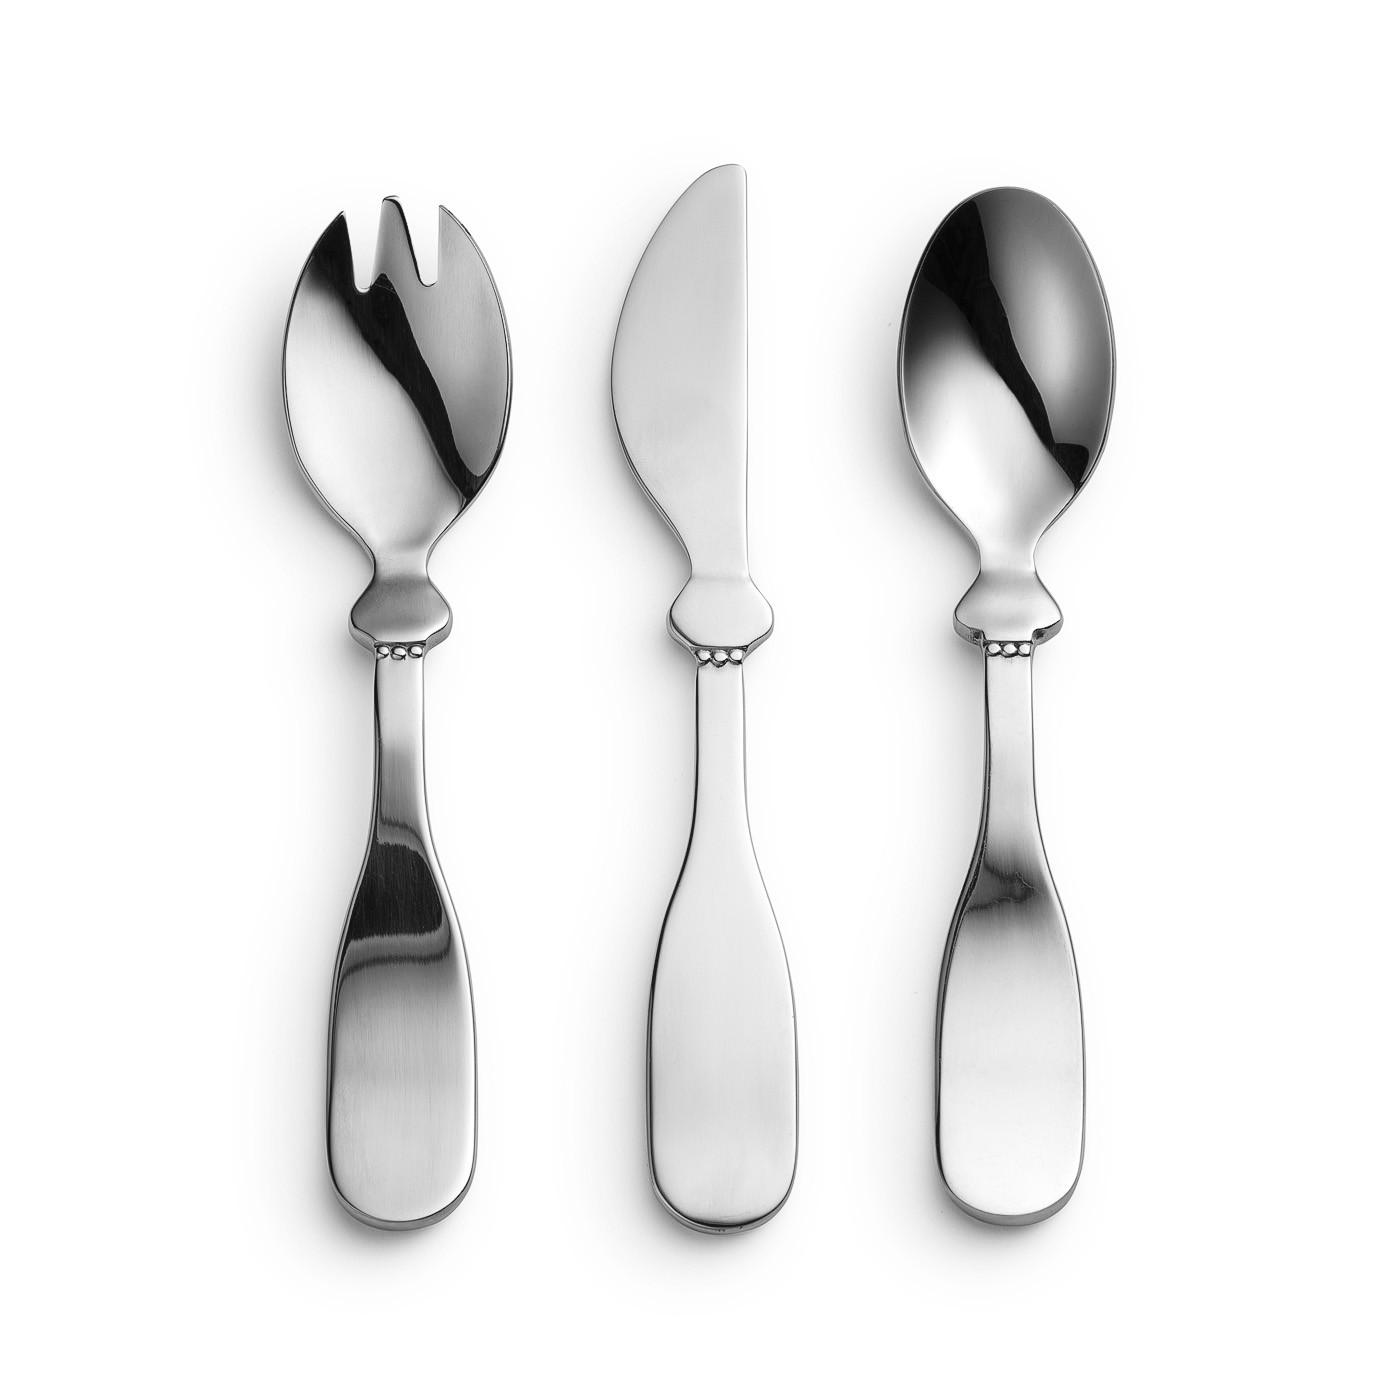 Elodie - Baby bestek -mes, vork en lepel Silver